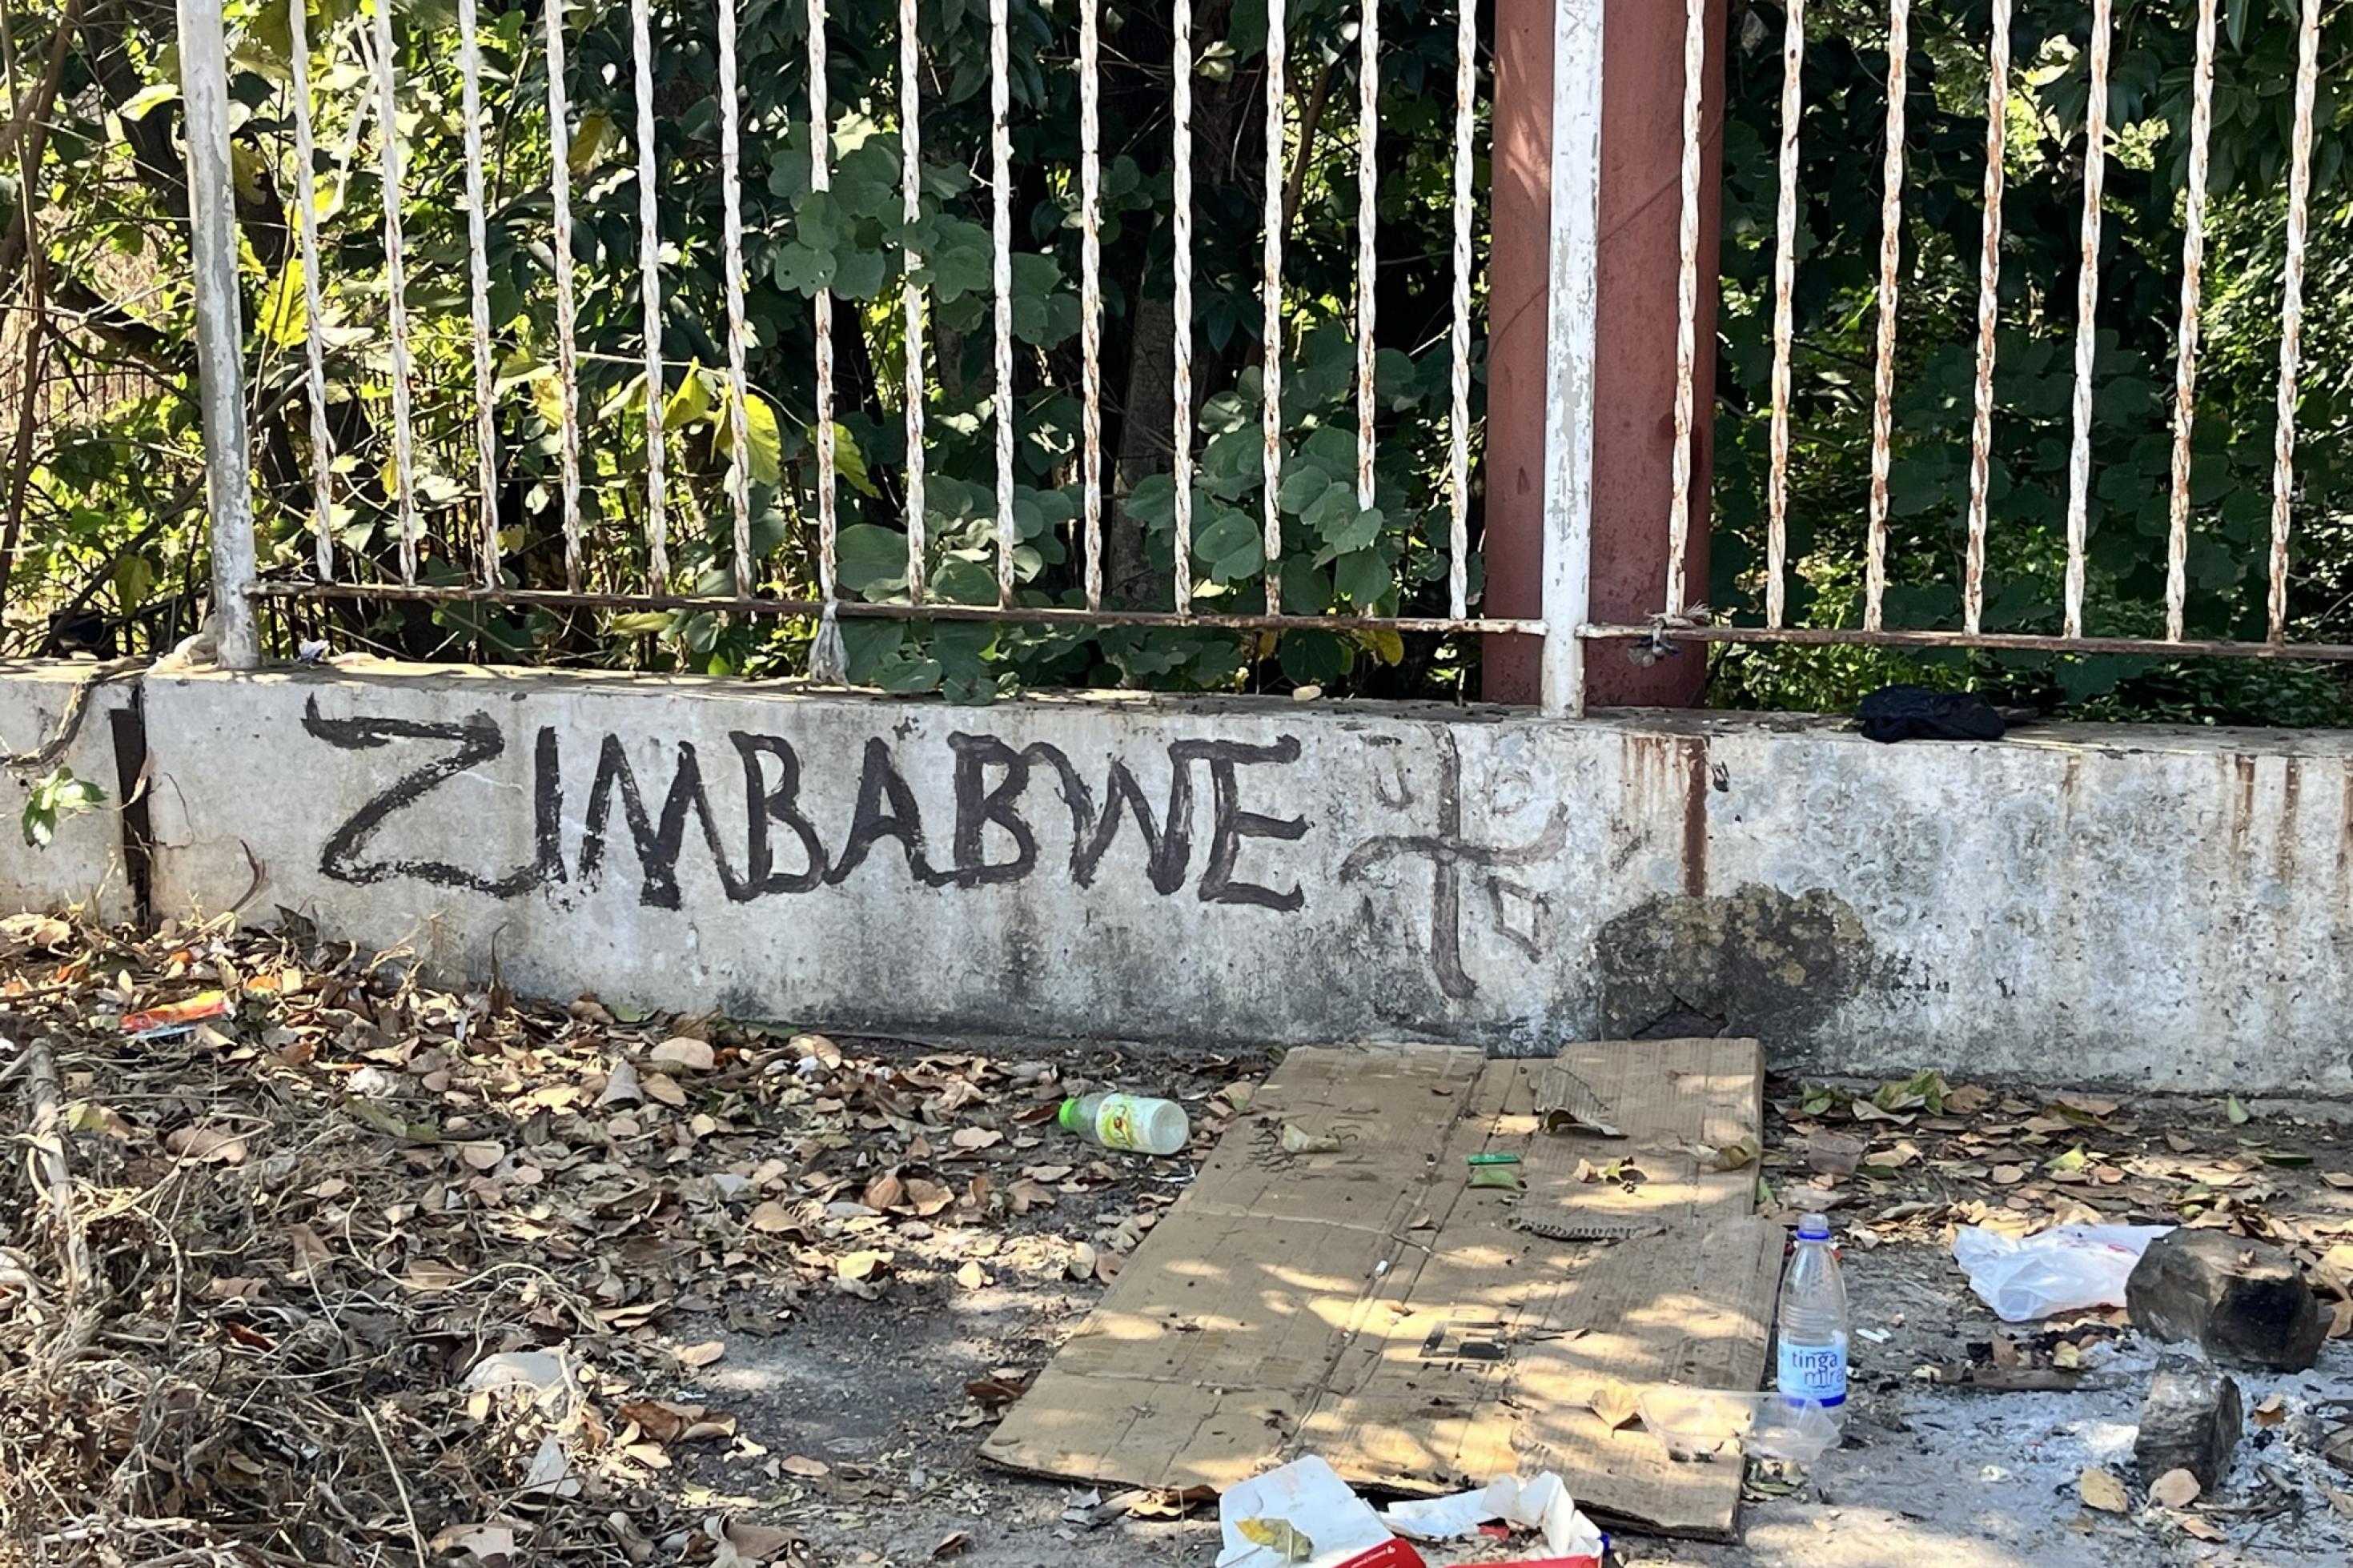 Auf eine Mauer hat jemand Zimbabwe geschrieben. Davor liegt Müll.